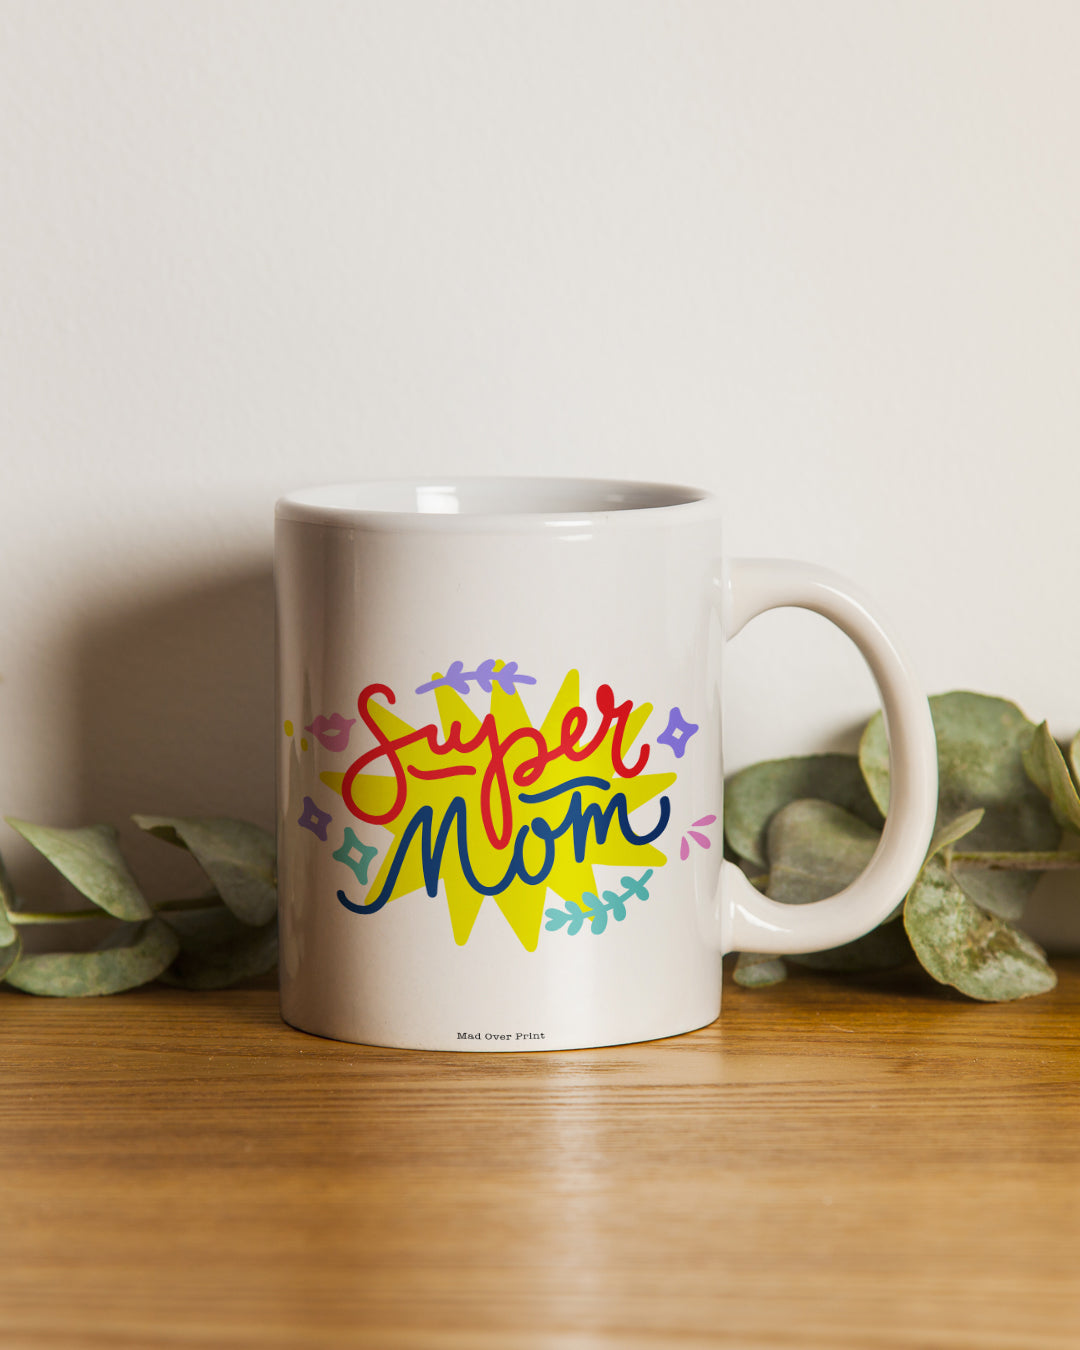 Super-mom Mug